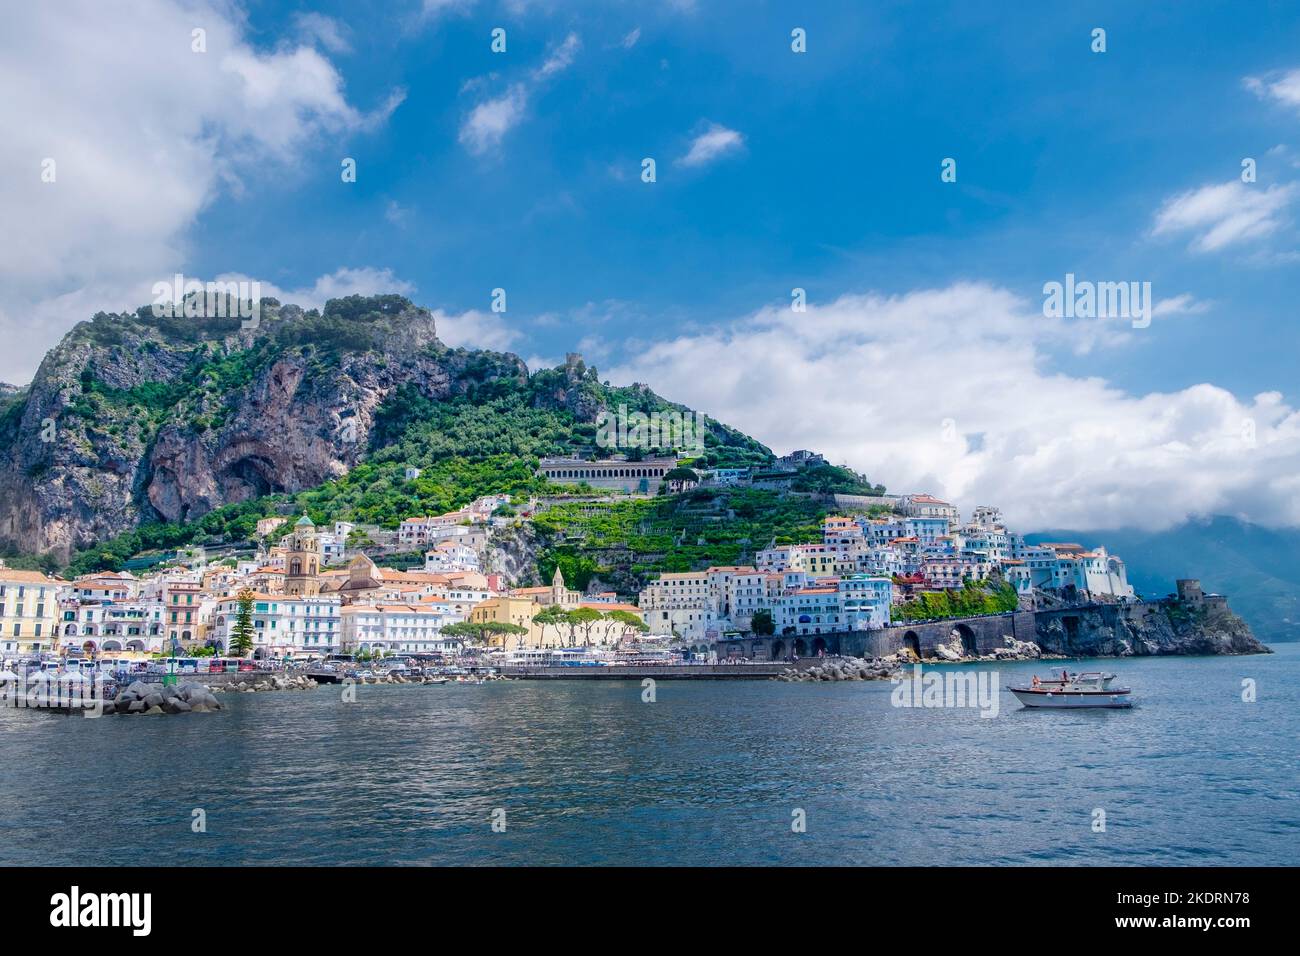 Ein Panoramablick auf die Stadt Amalfi an der Amalfiküste von Italien zeigt klaren blauen Himmel und Sonnenschein. Stockfoto